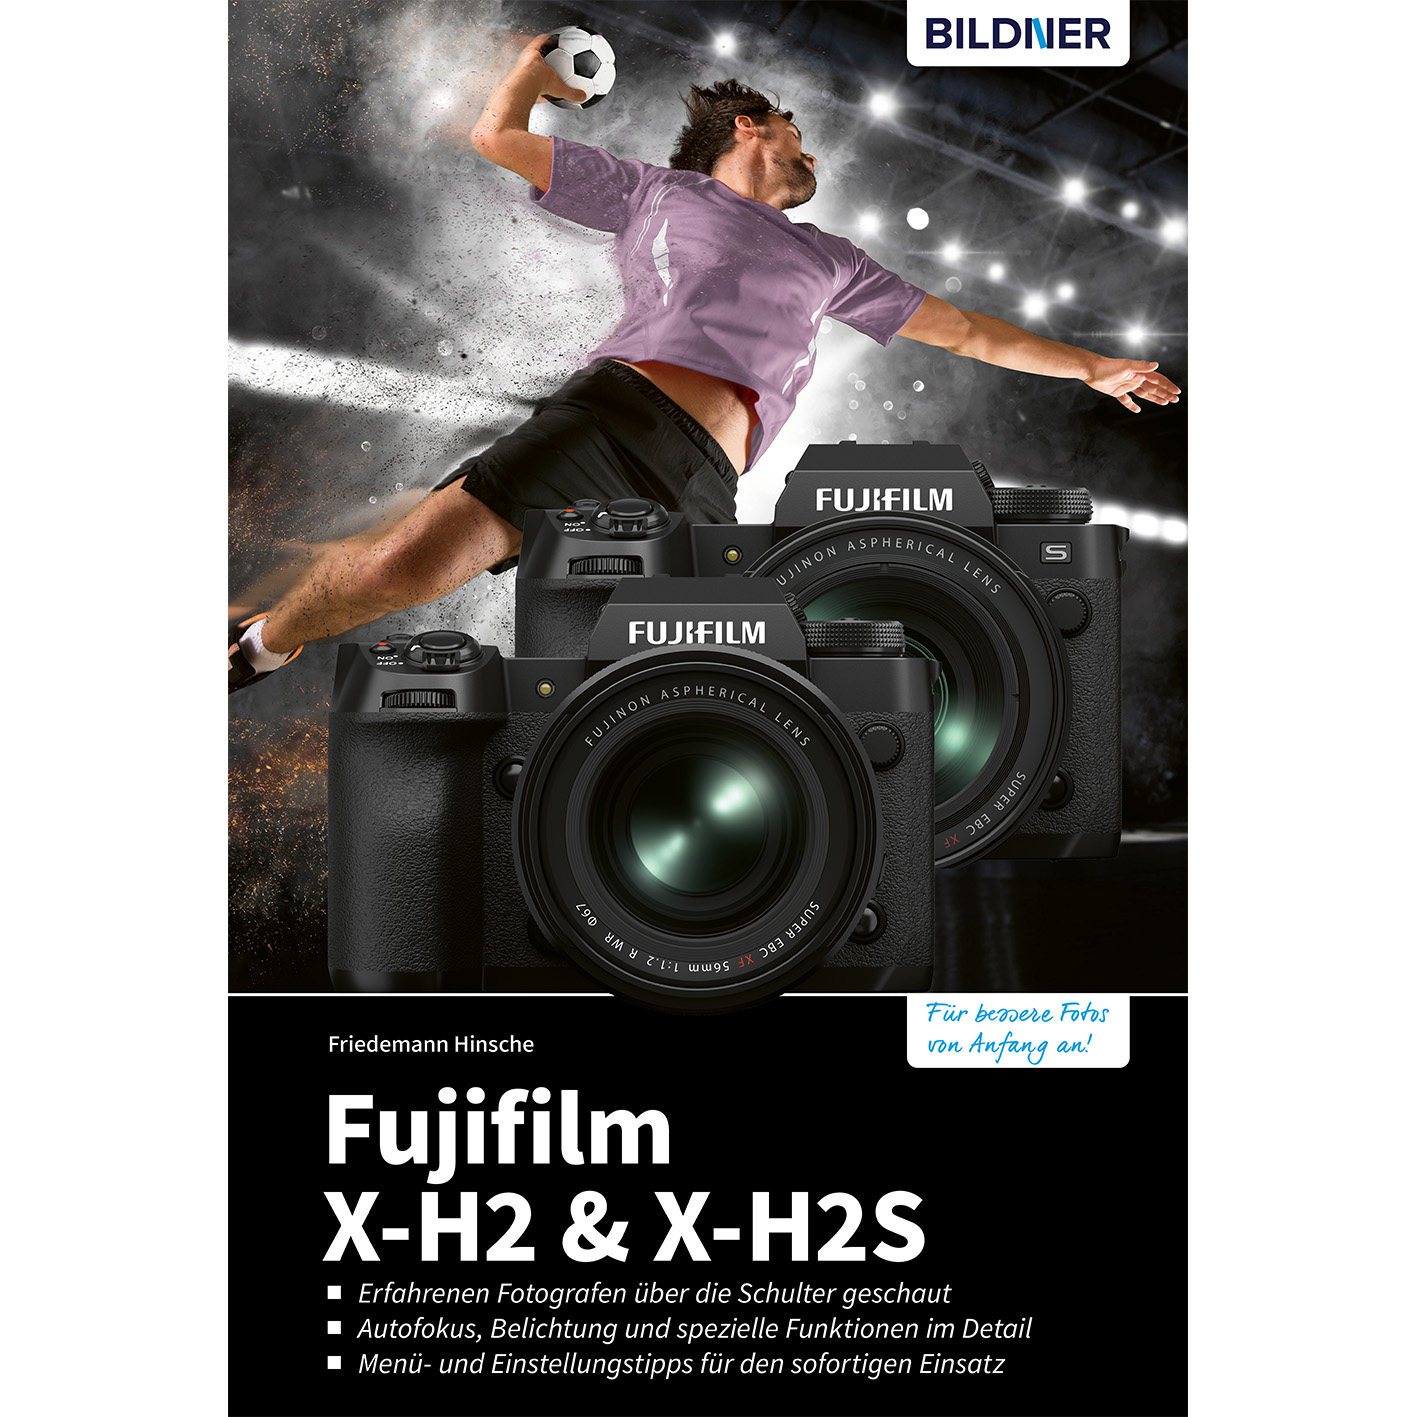 zu Praxisbuch X-H2 - umfangreiche Kamera Das Fujifilm X-H2s Ihrer &